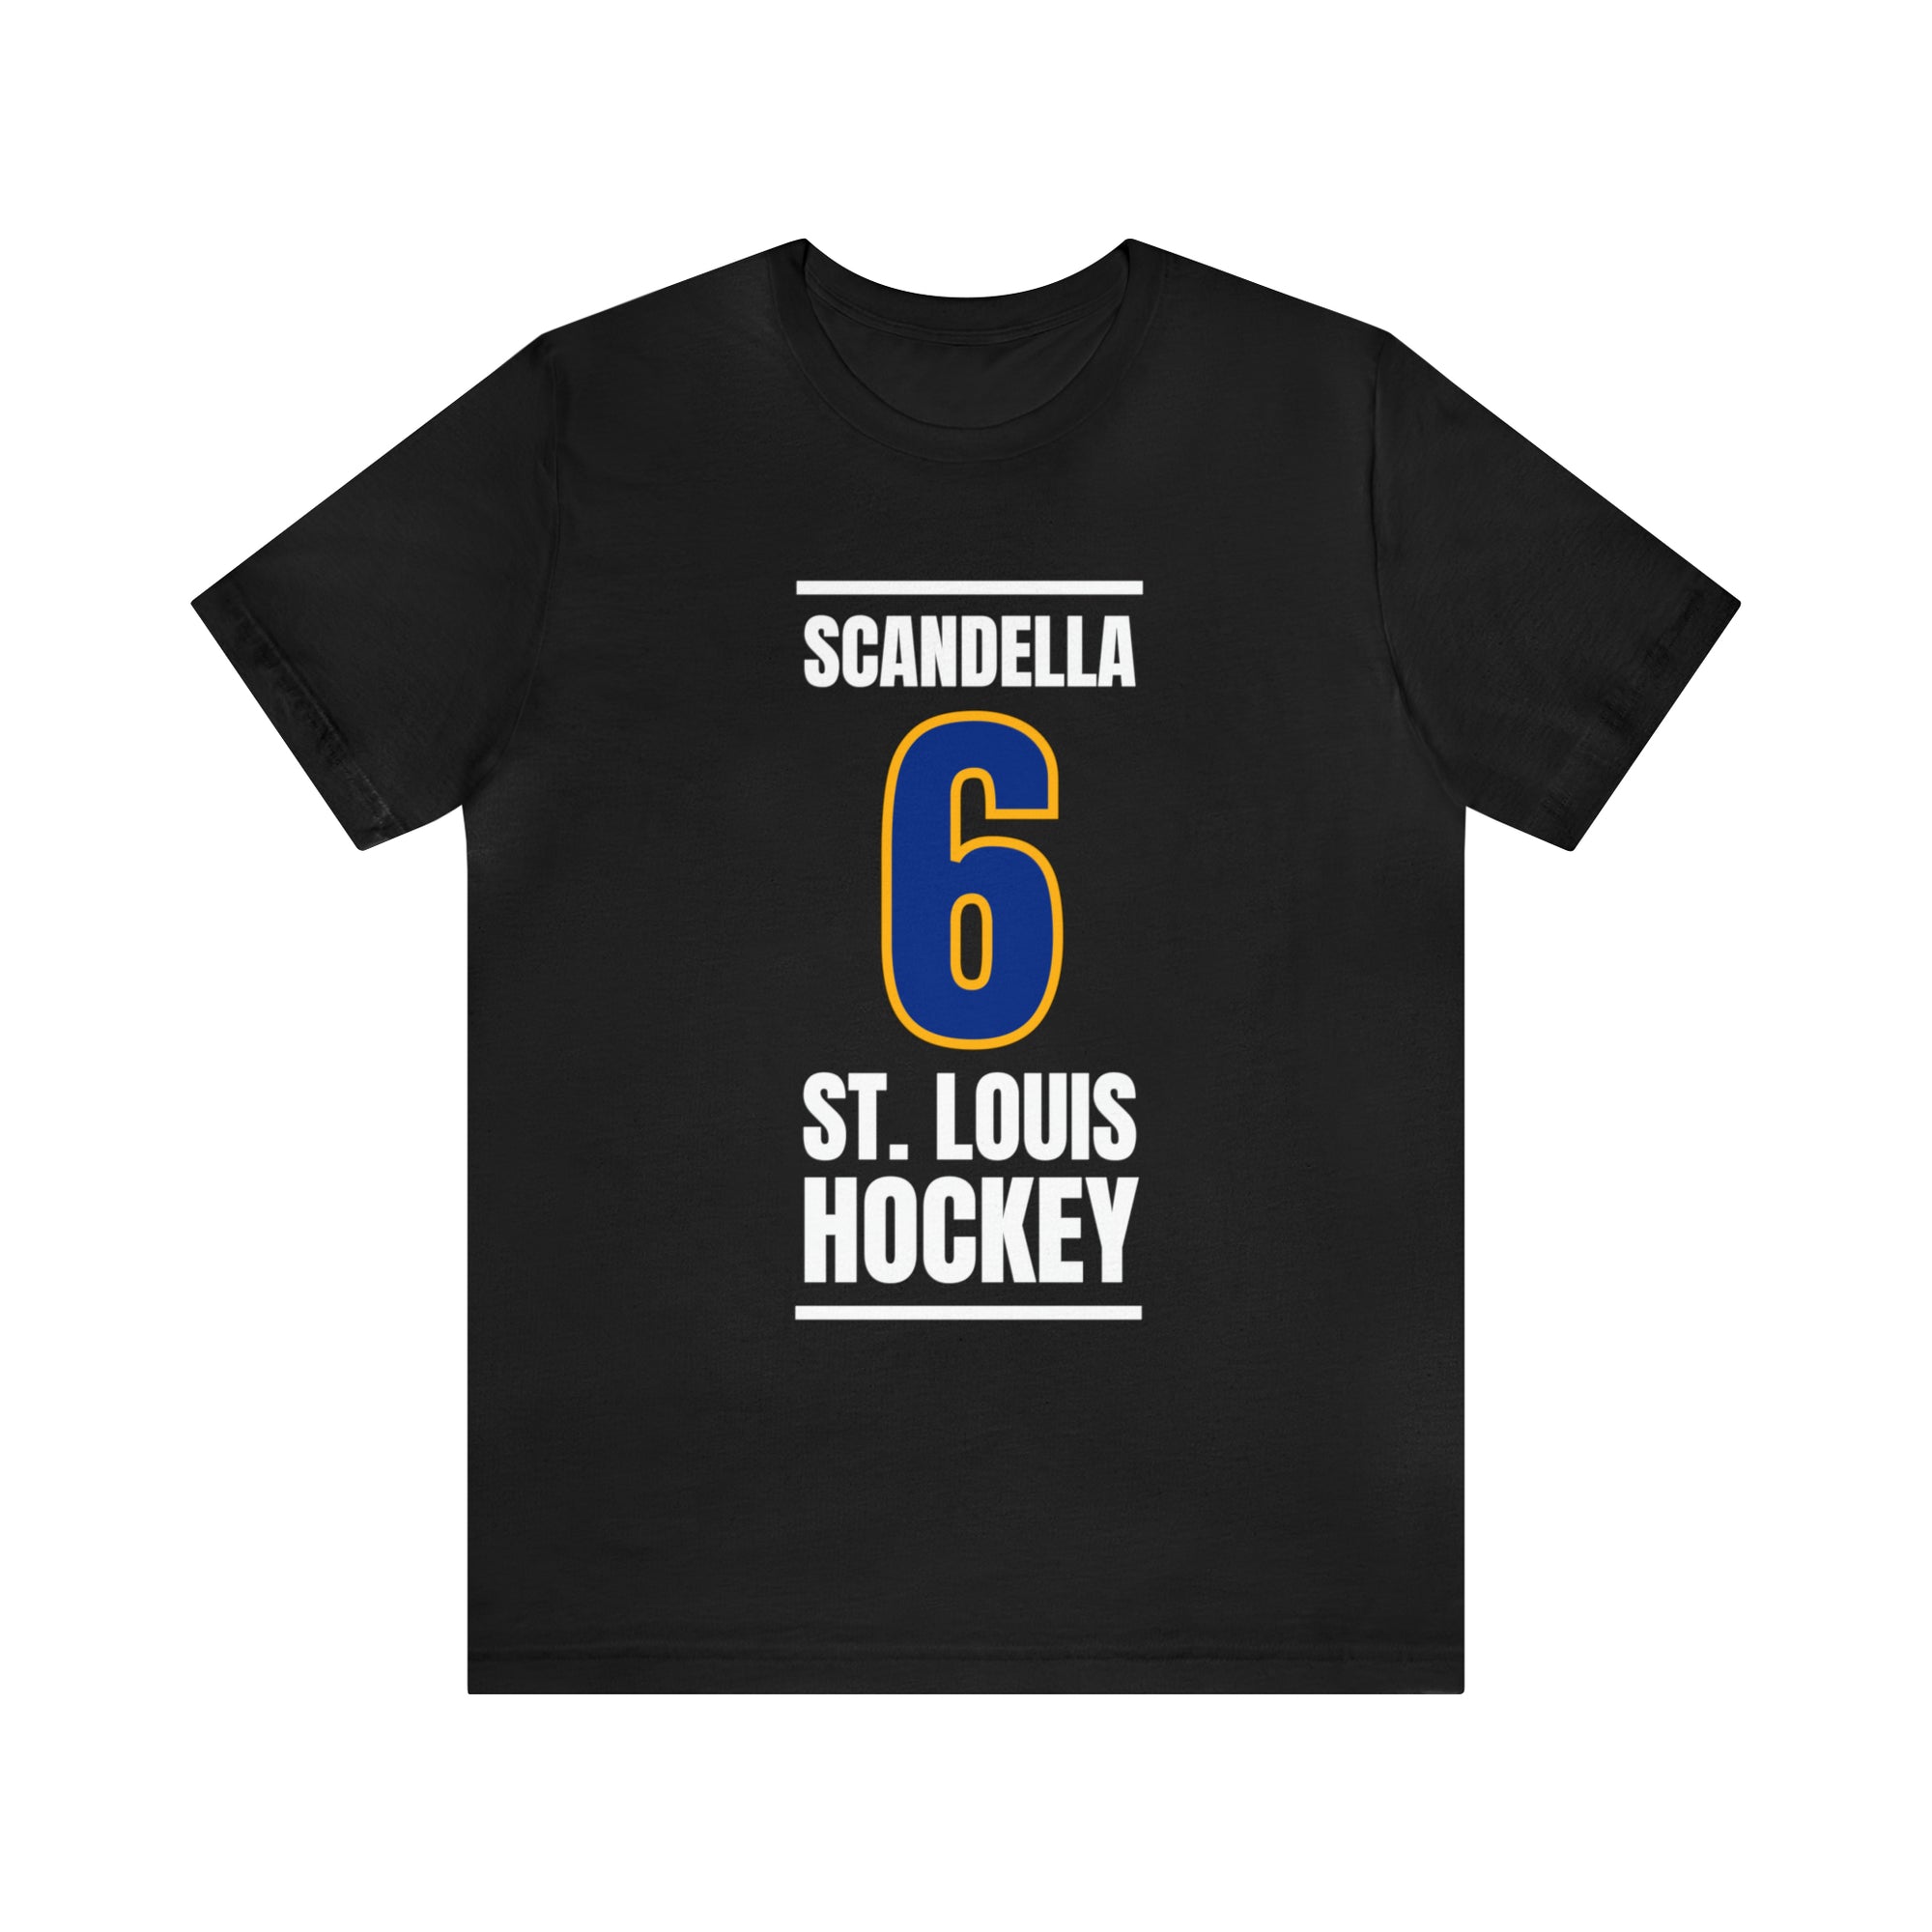 Scandella 6 St. Louis Hockey Blue Vertical Design Unisex T-Shirt